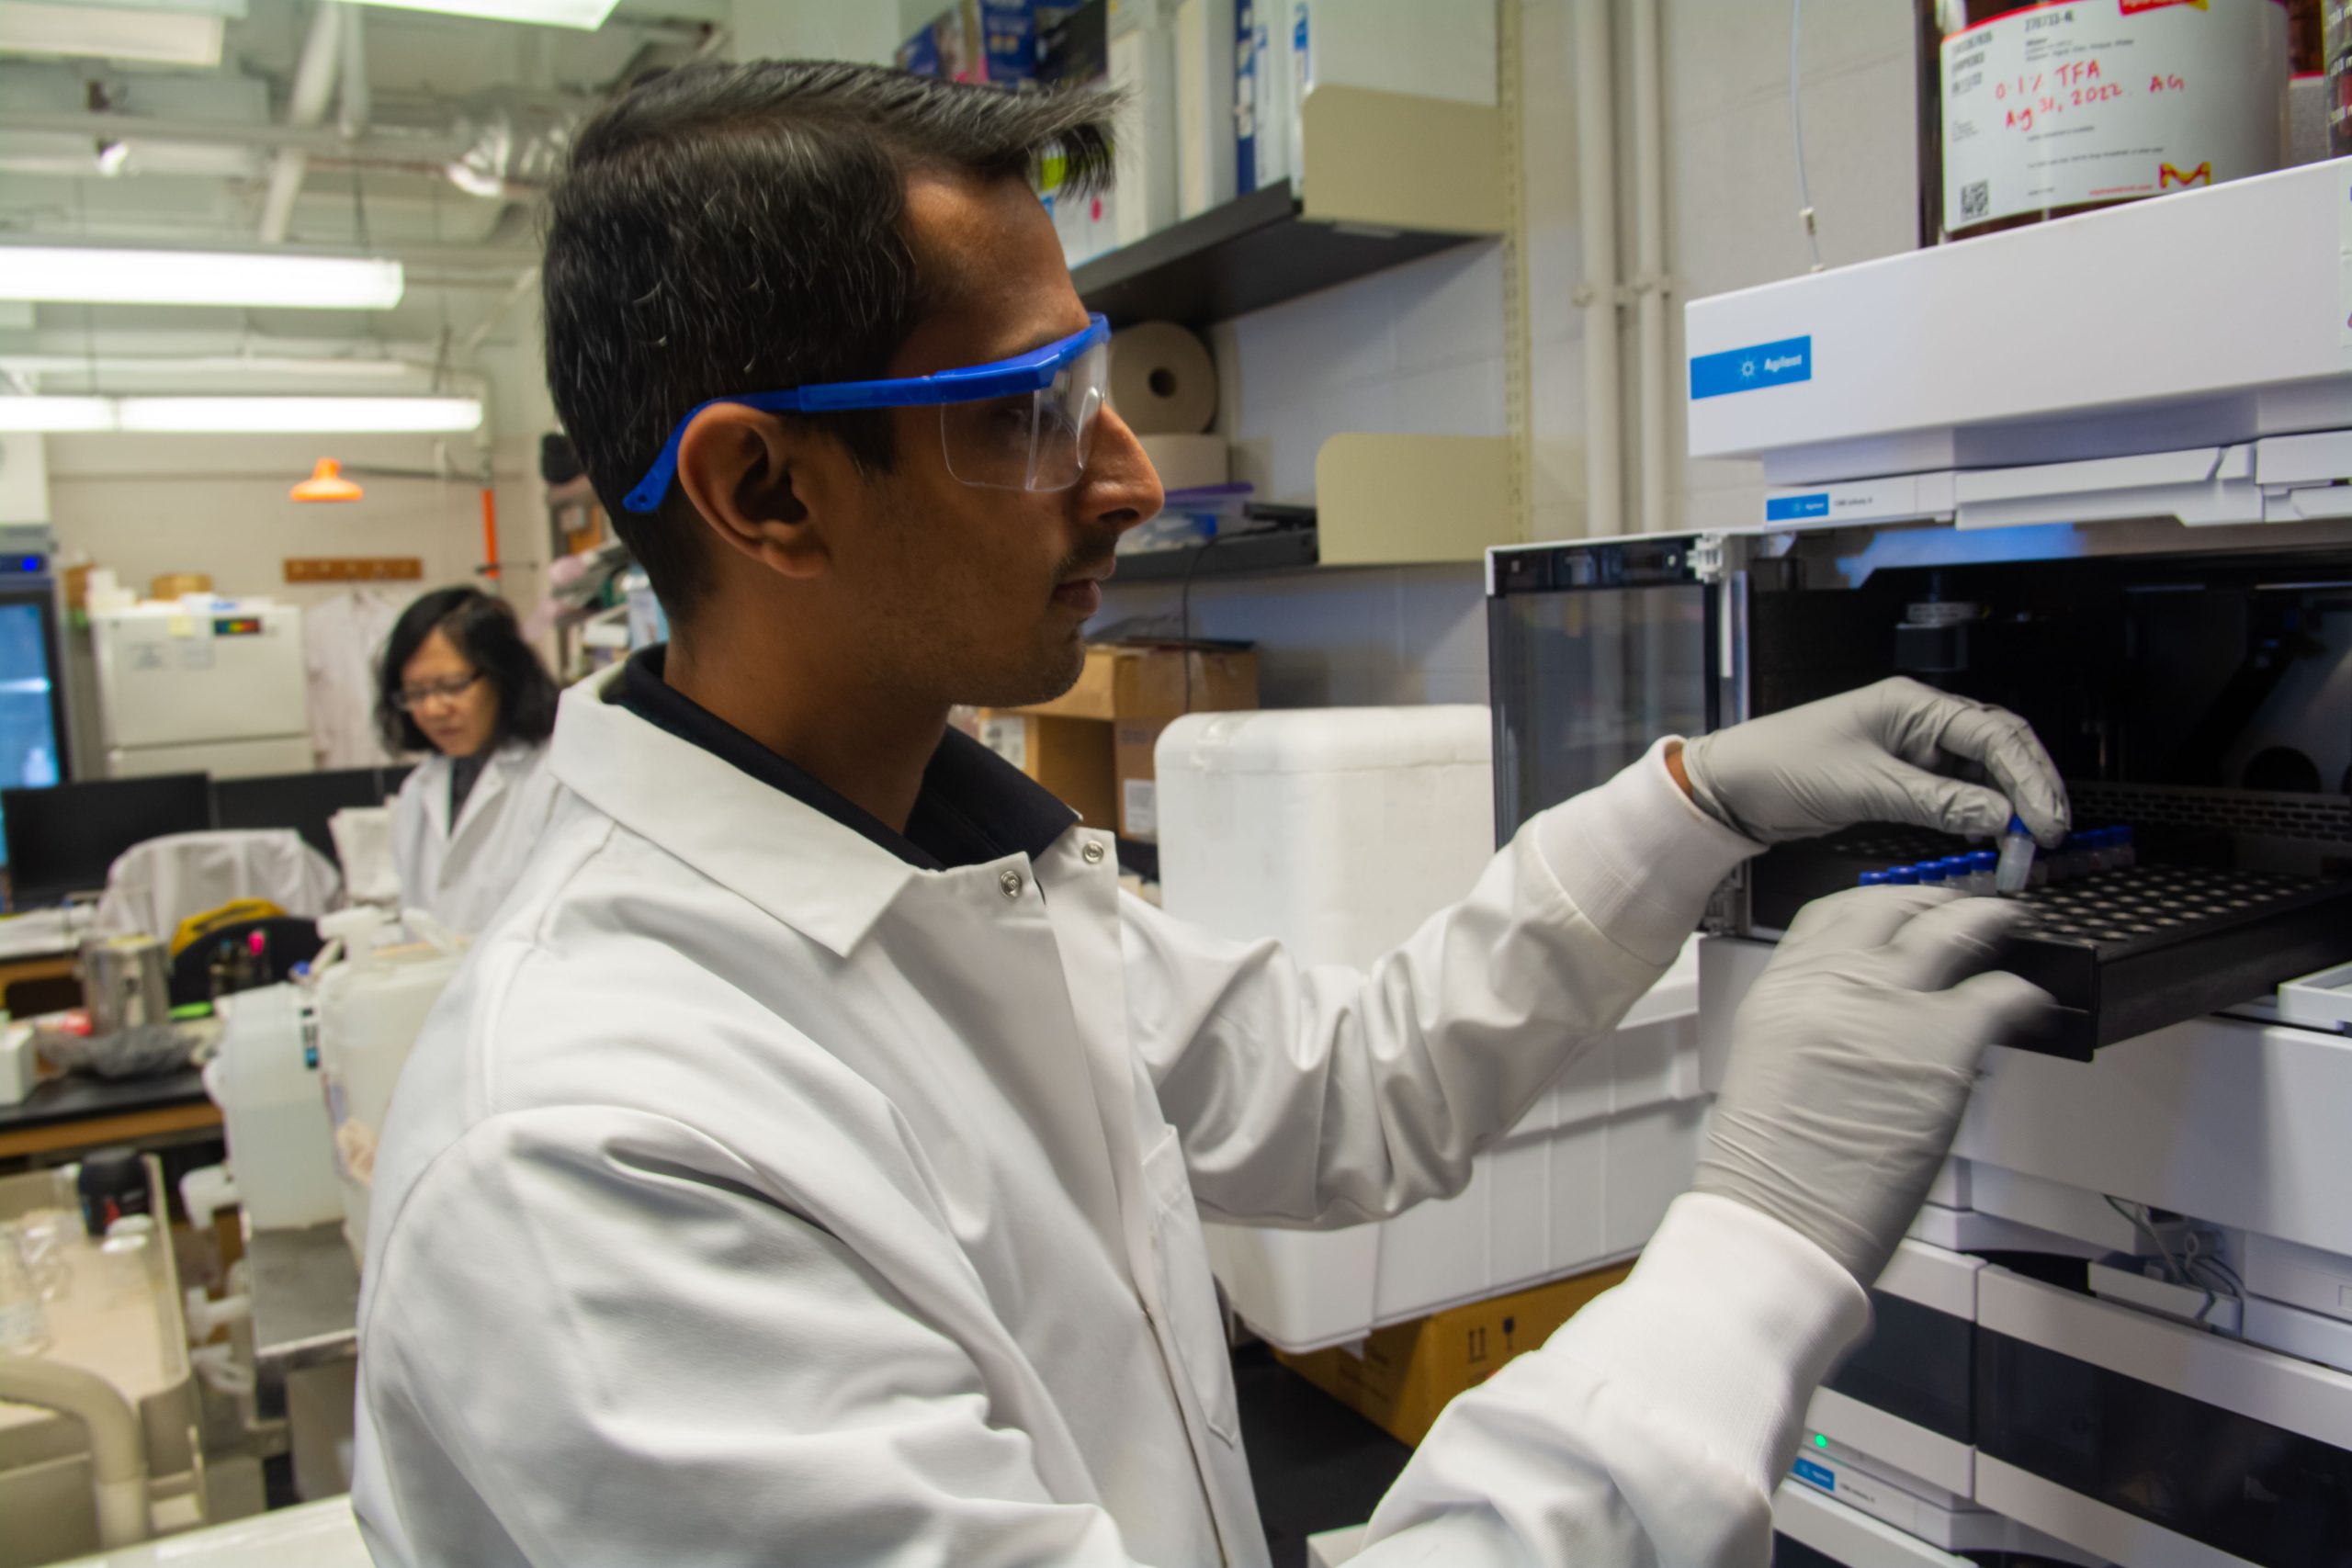 A researcher loads a test tube into a machine in a scientific lab